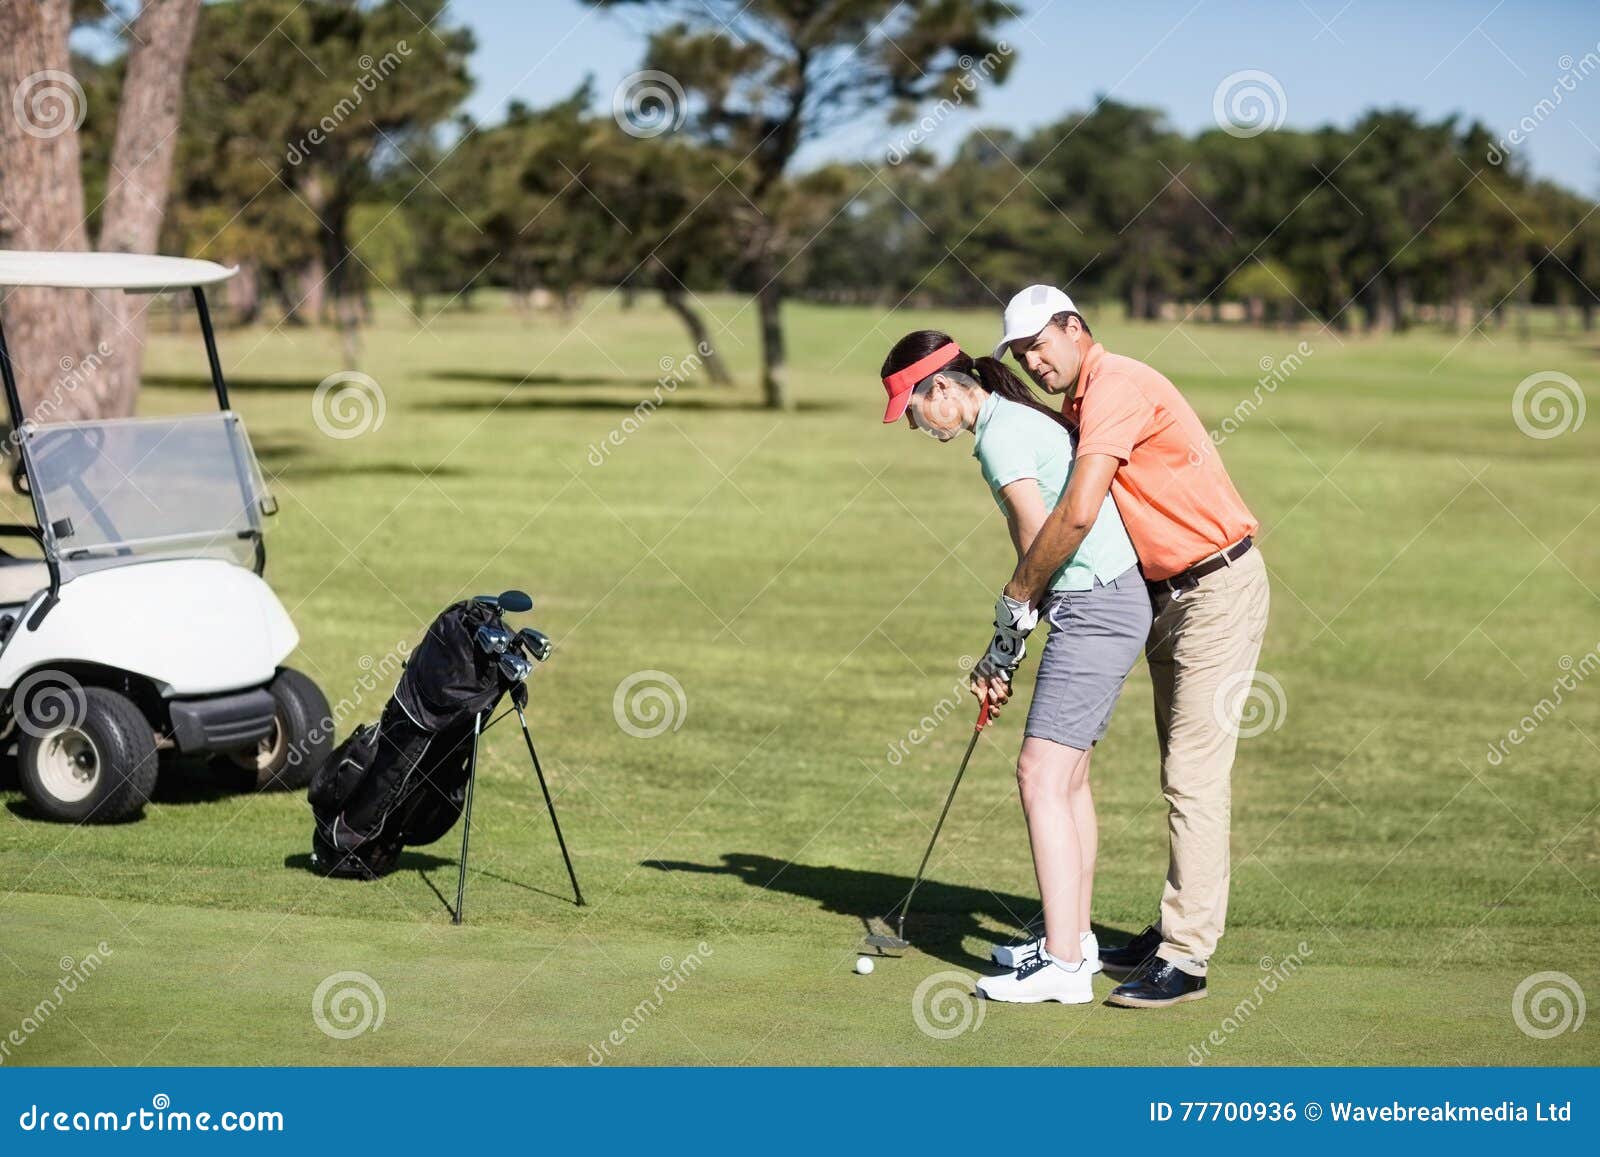 Как научиться плохо играть в гольф. Дети играют в гольф. Гольф мужчина учит. Женщина играет в гольф. Байден играет в гольф.